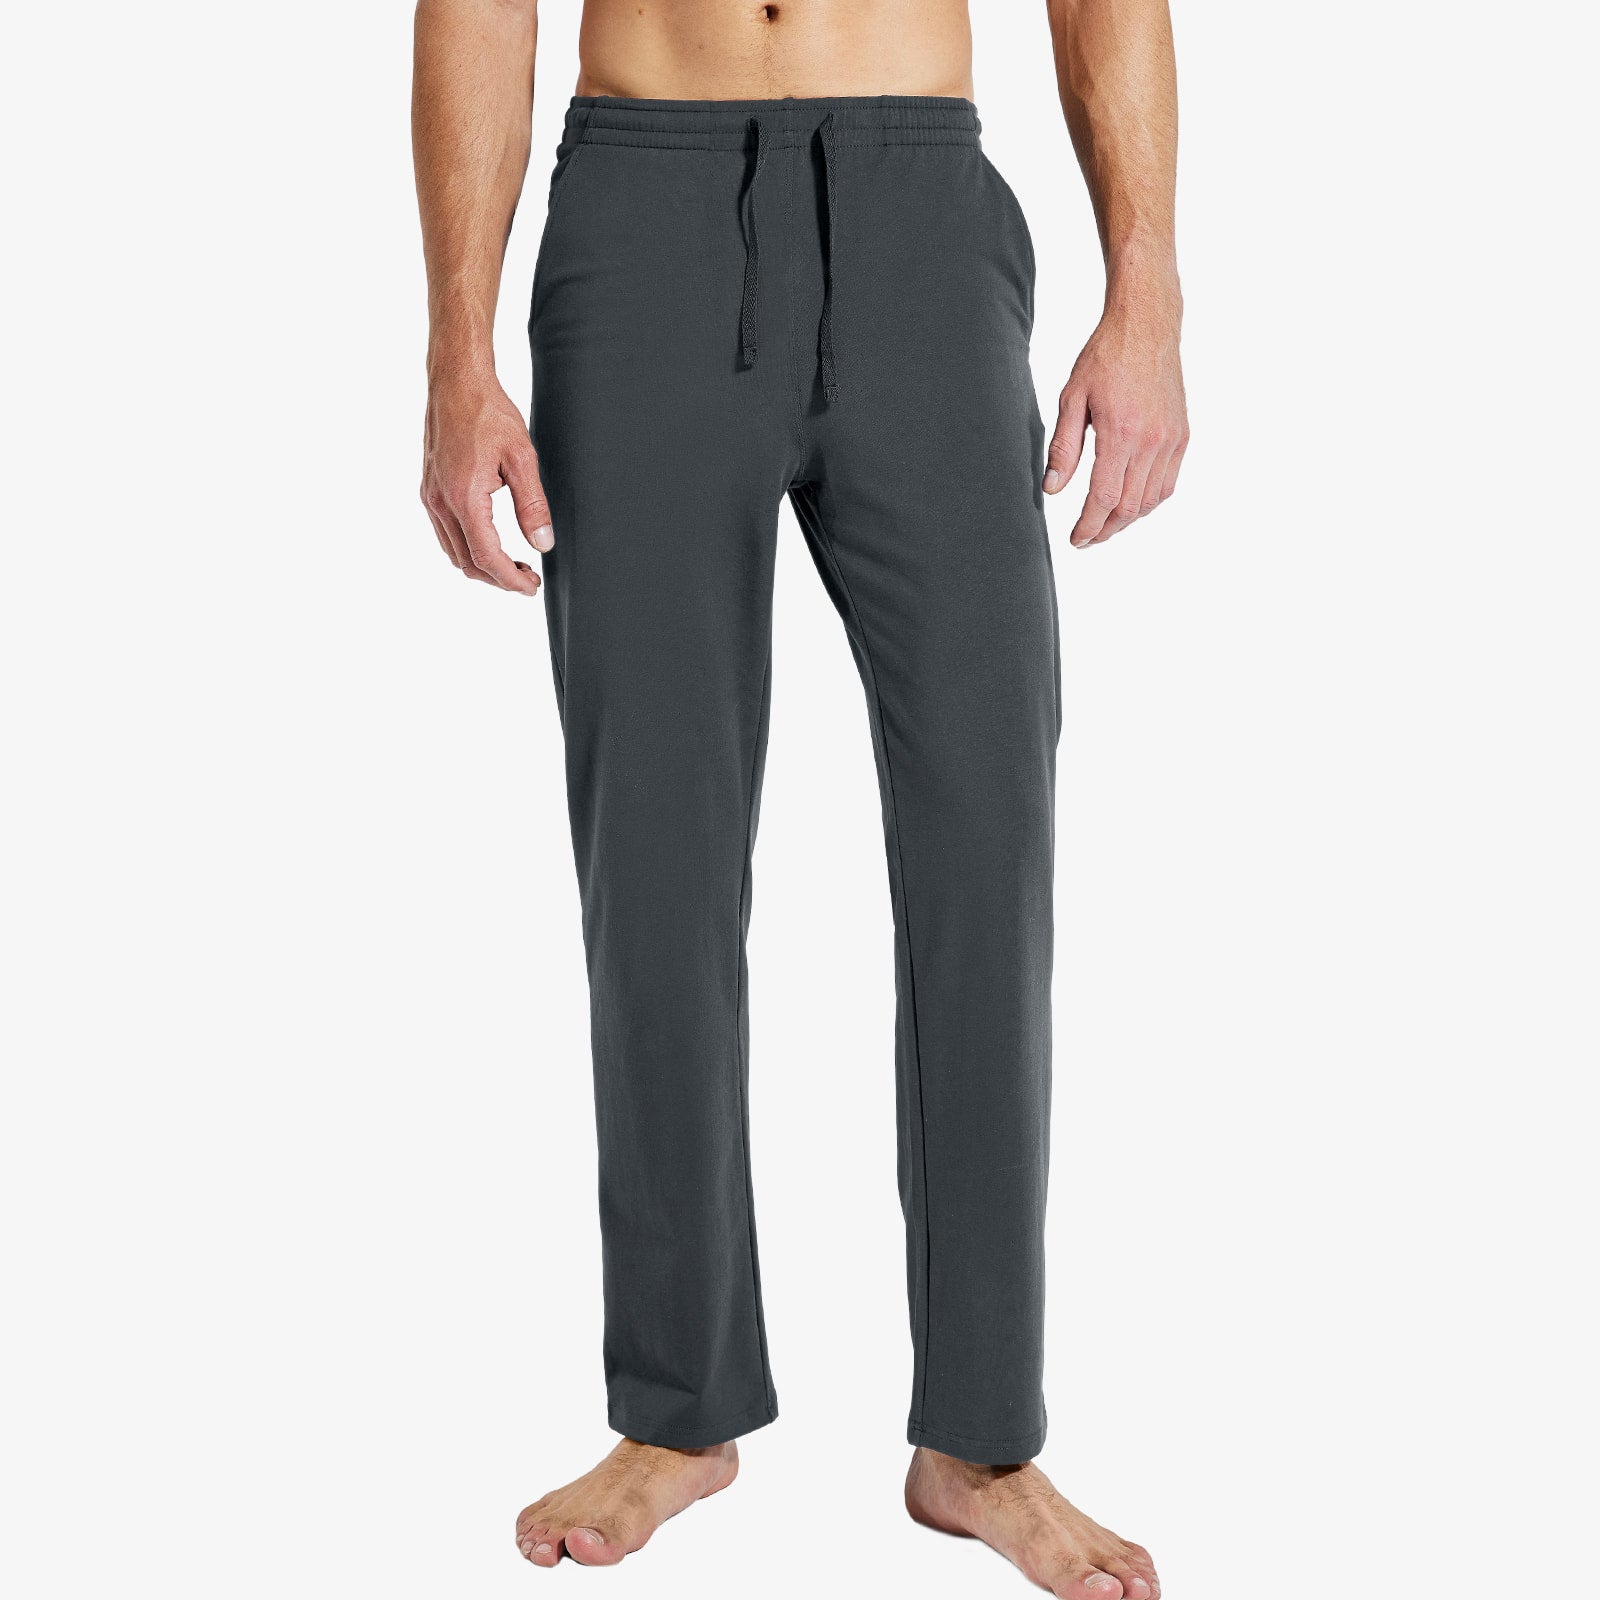 Men's Cotton Sweatpants with Pockets Lightweight Sports Knit Pants Men Train Pants Charcoal / S MIER